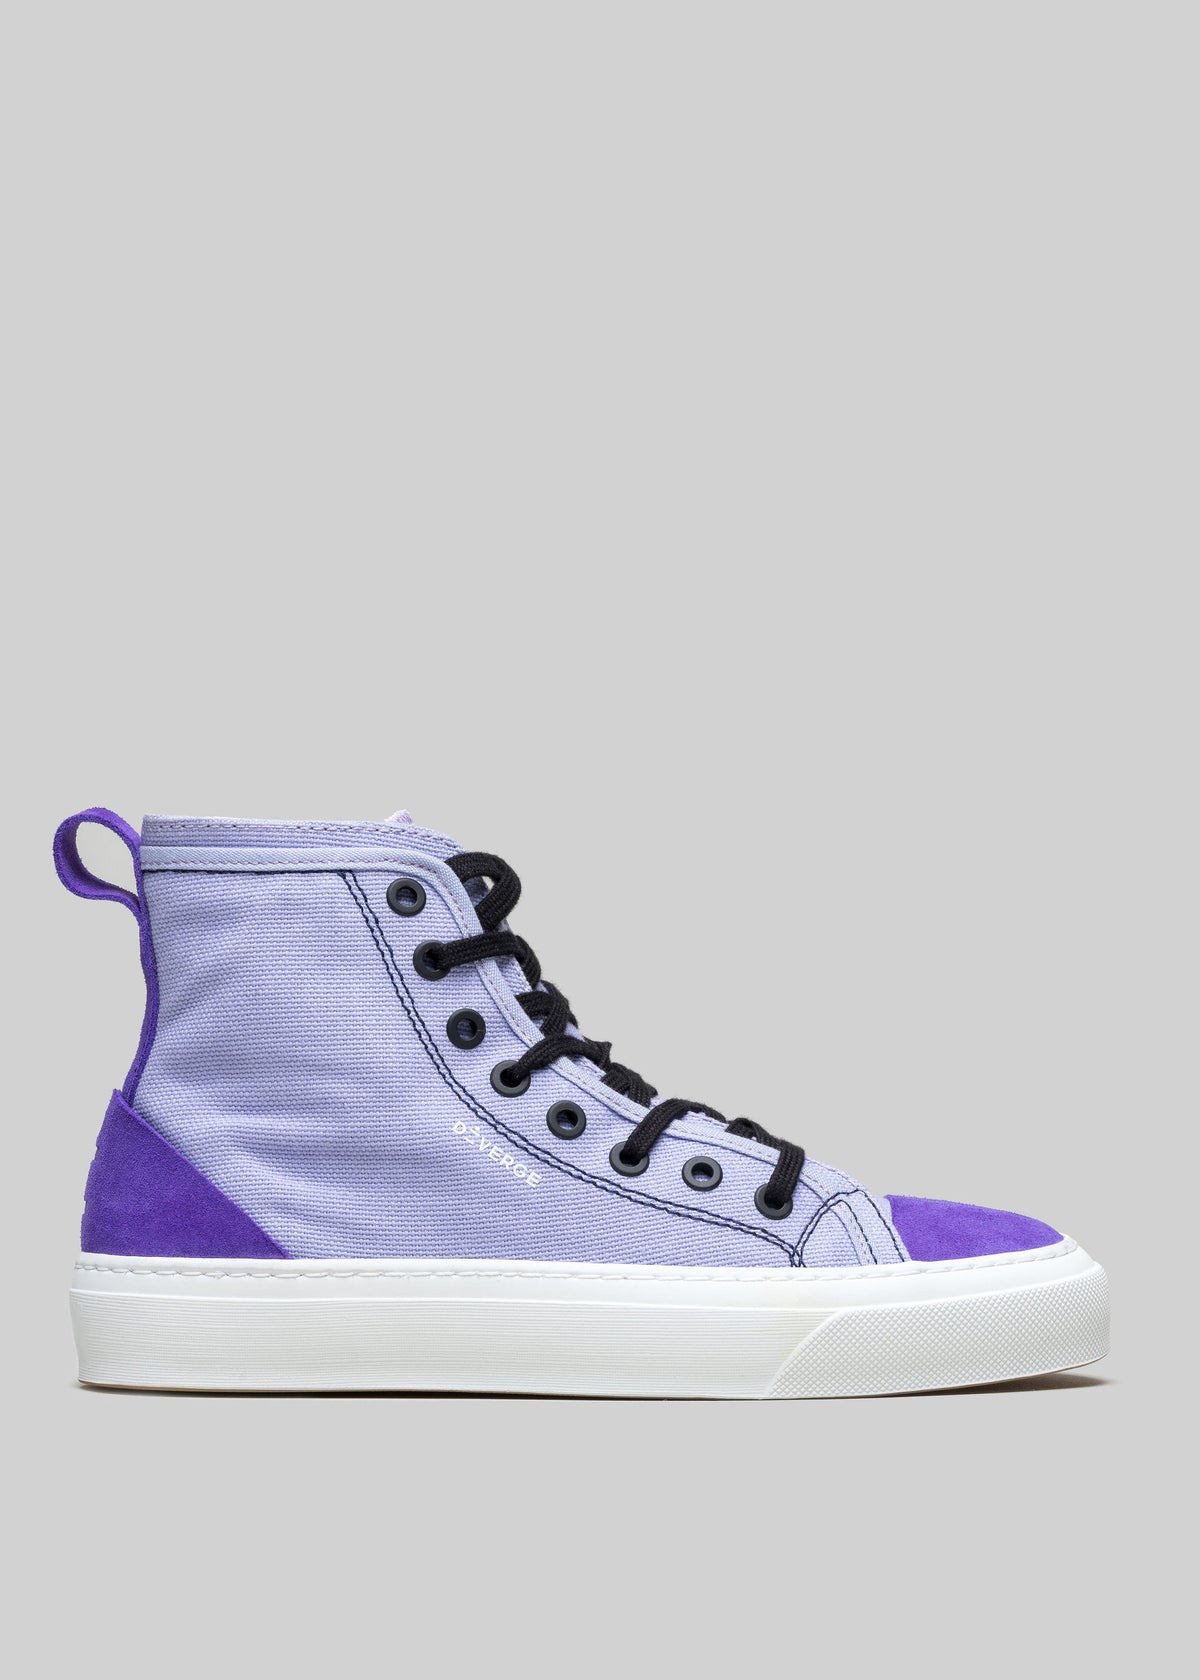 Una sneaker high-top TH0001 by Leandra con punta e suola bianca, lacci neri e un distinto bordo viola intorno alla parte inferiore, perfetta come scarpa personalizzata per uno stile unico.